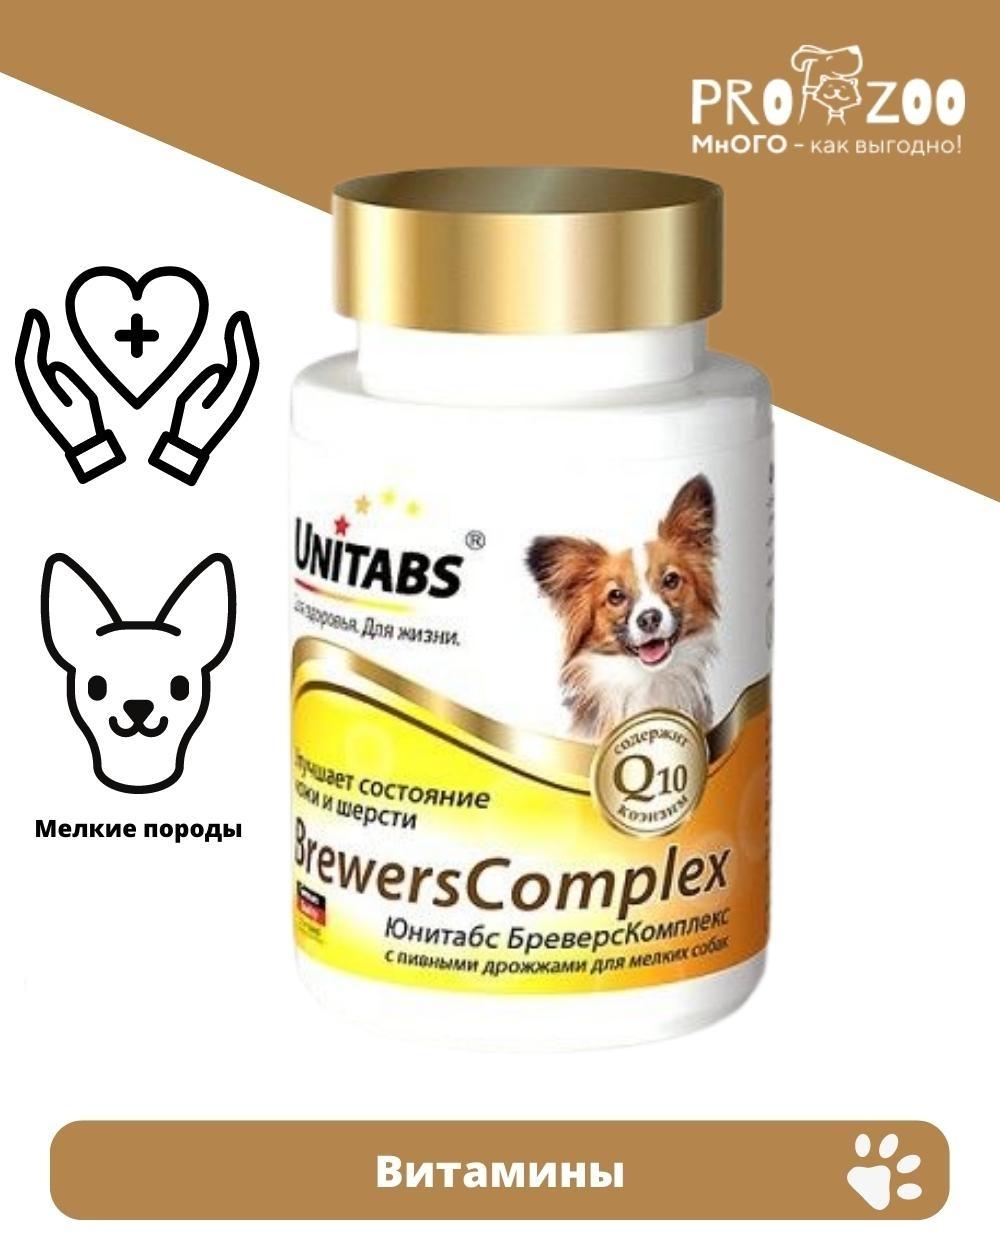 Витамины Unitabs Brewers Complex Mini для кожи и шерсти для взрослых собак, 100 шт 1